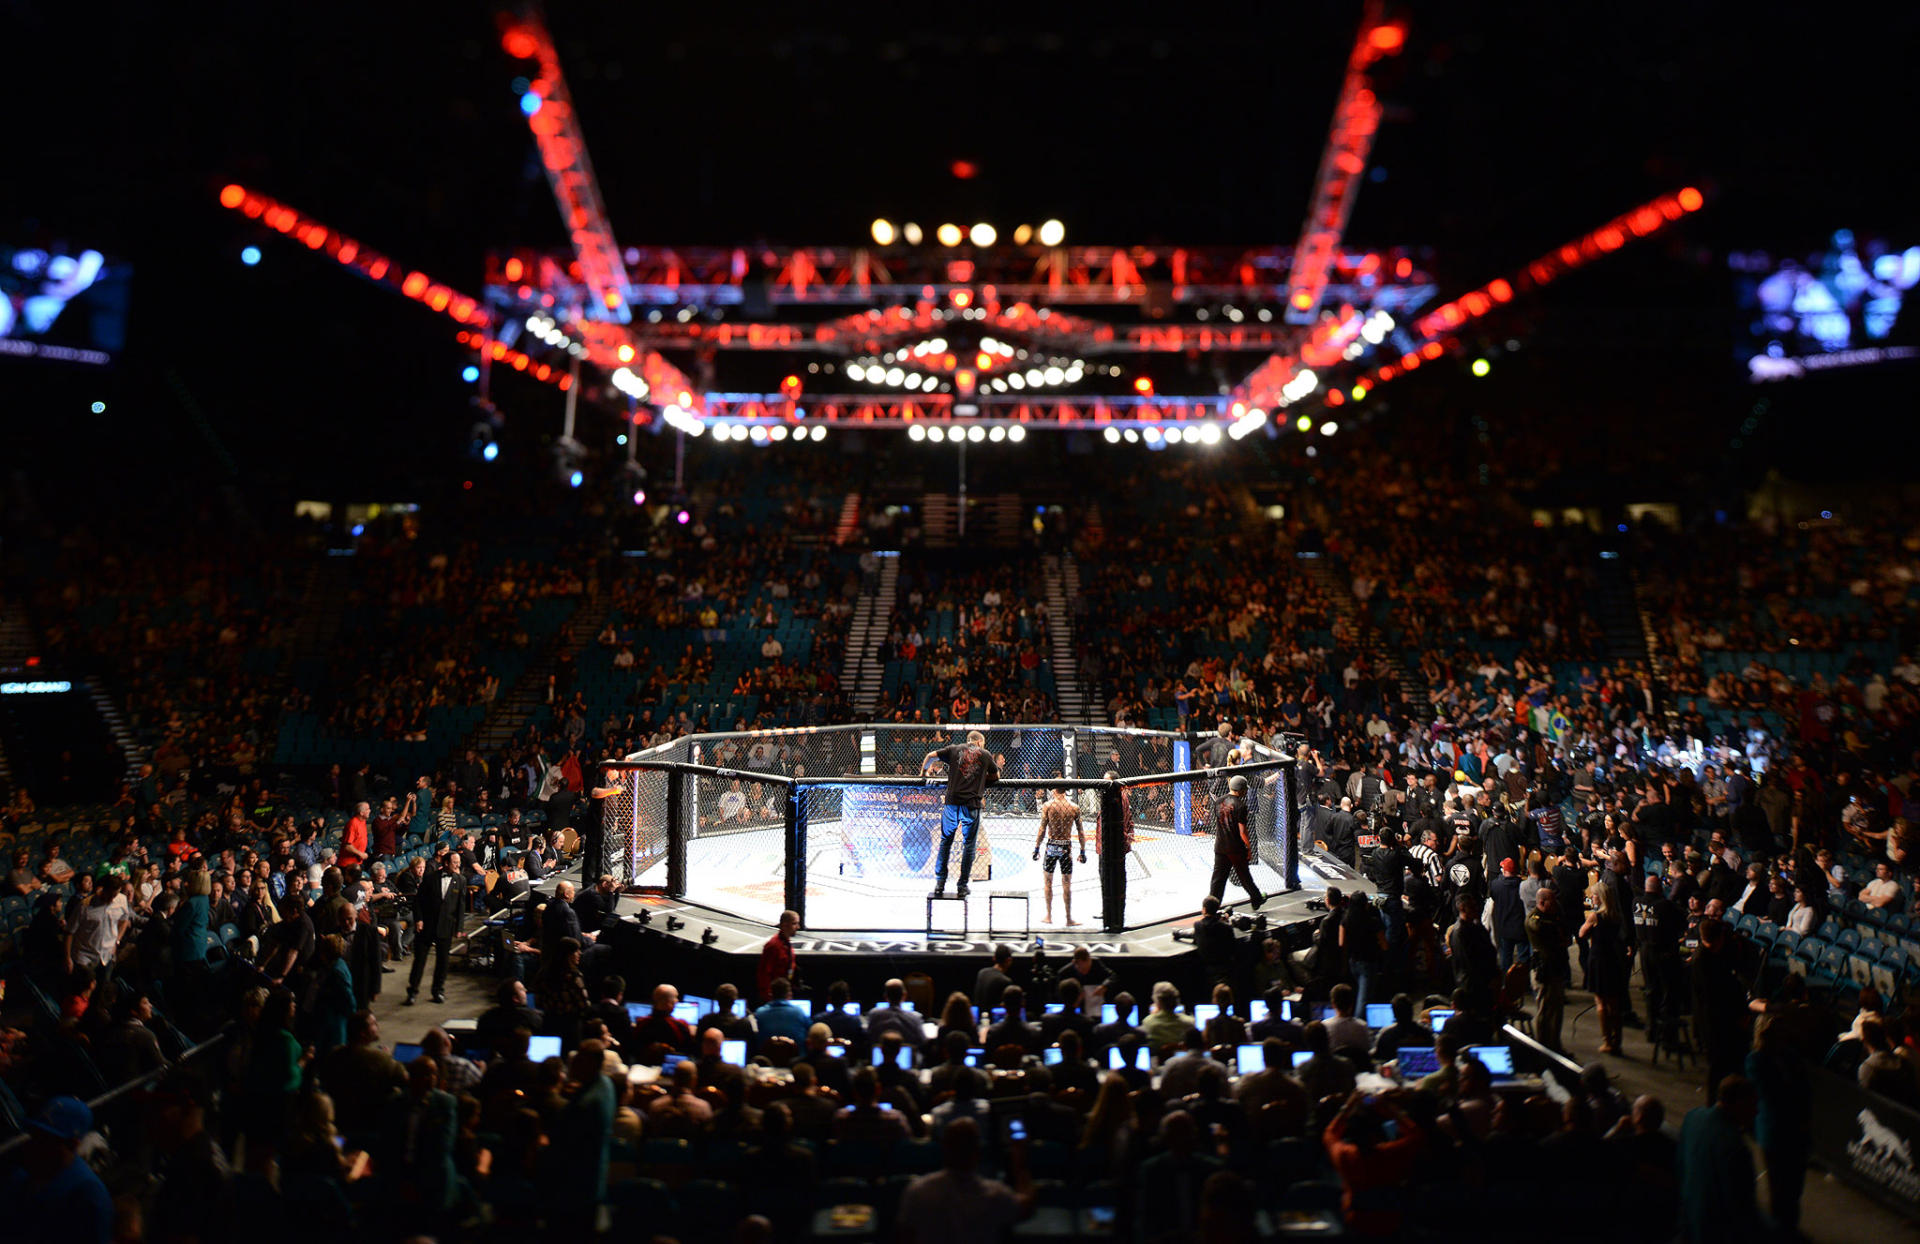 UFC подтвердил проведение поединка Джонс - Густафссон 29 декабря в Лас-Вегасе